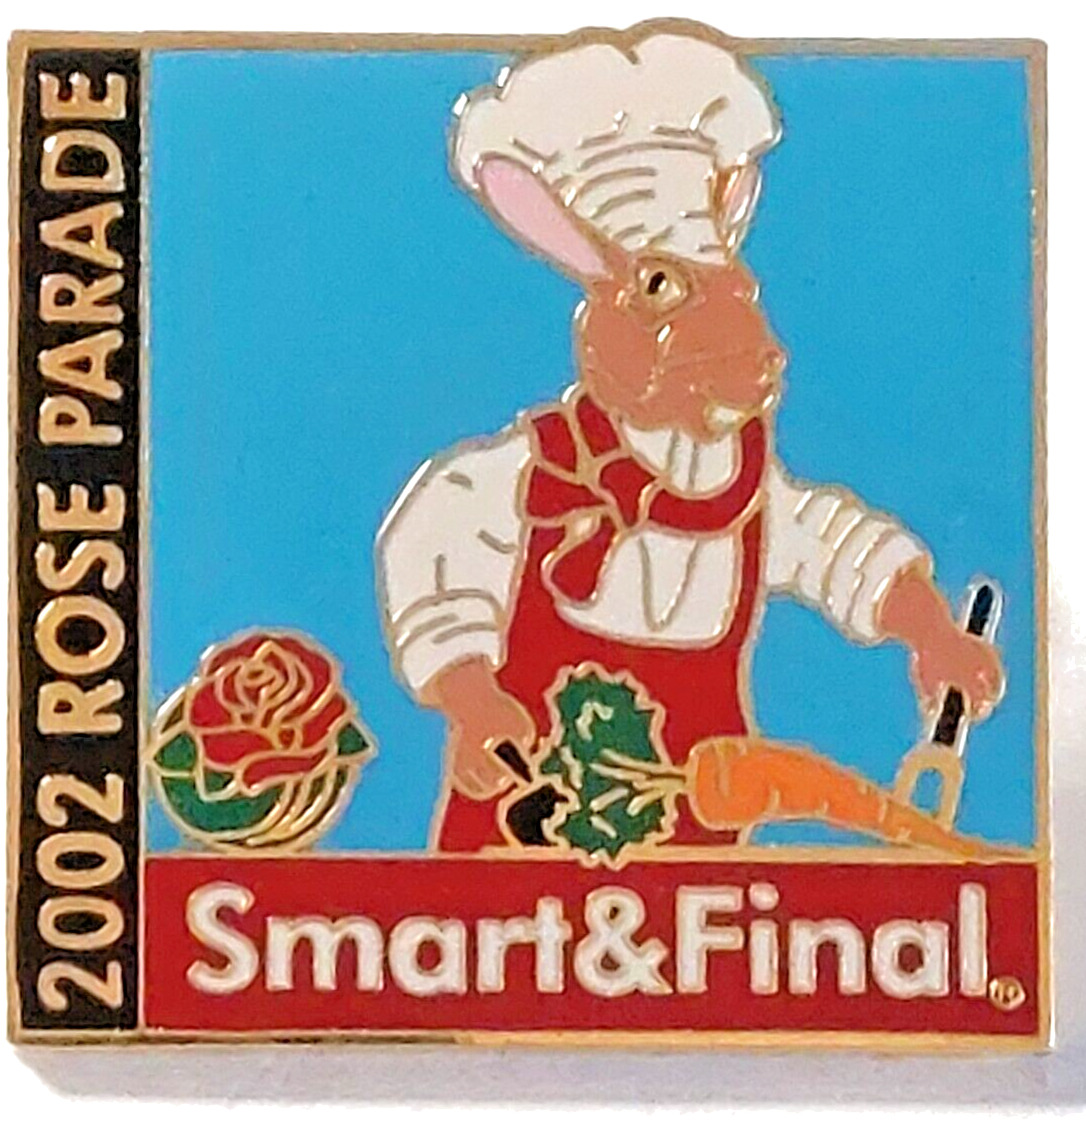 Rose Parade 2002 Smart & Final Lapel Pin (040323/072223)